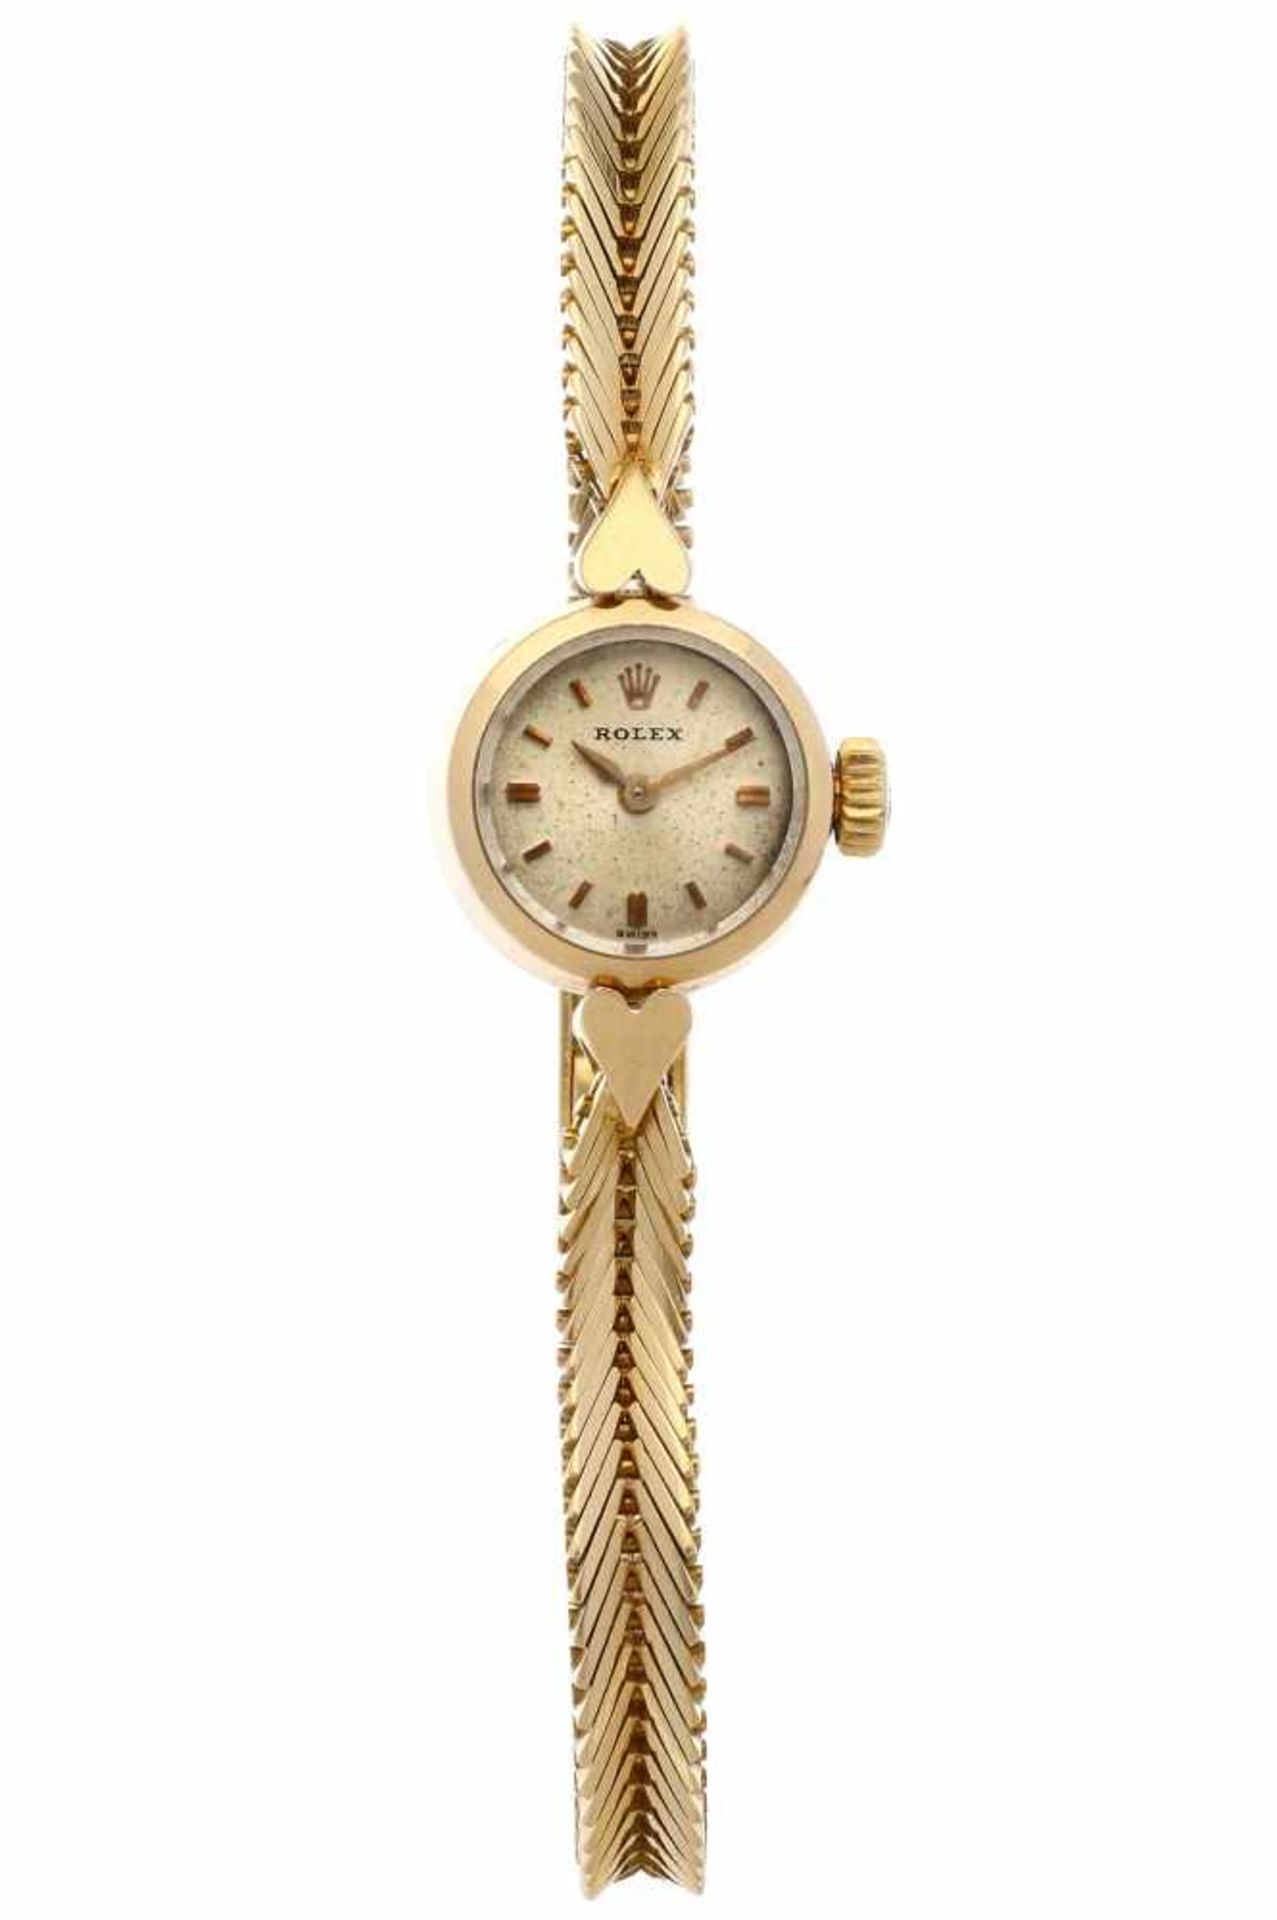 Rolex vintage - Ladies watch - Manual winding - Ca. 1955.